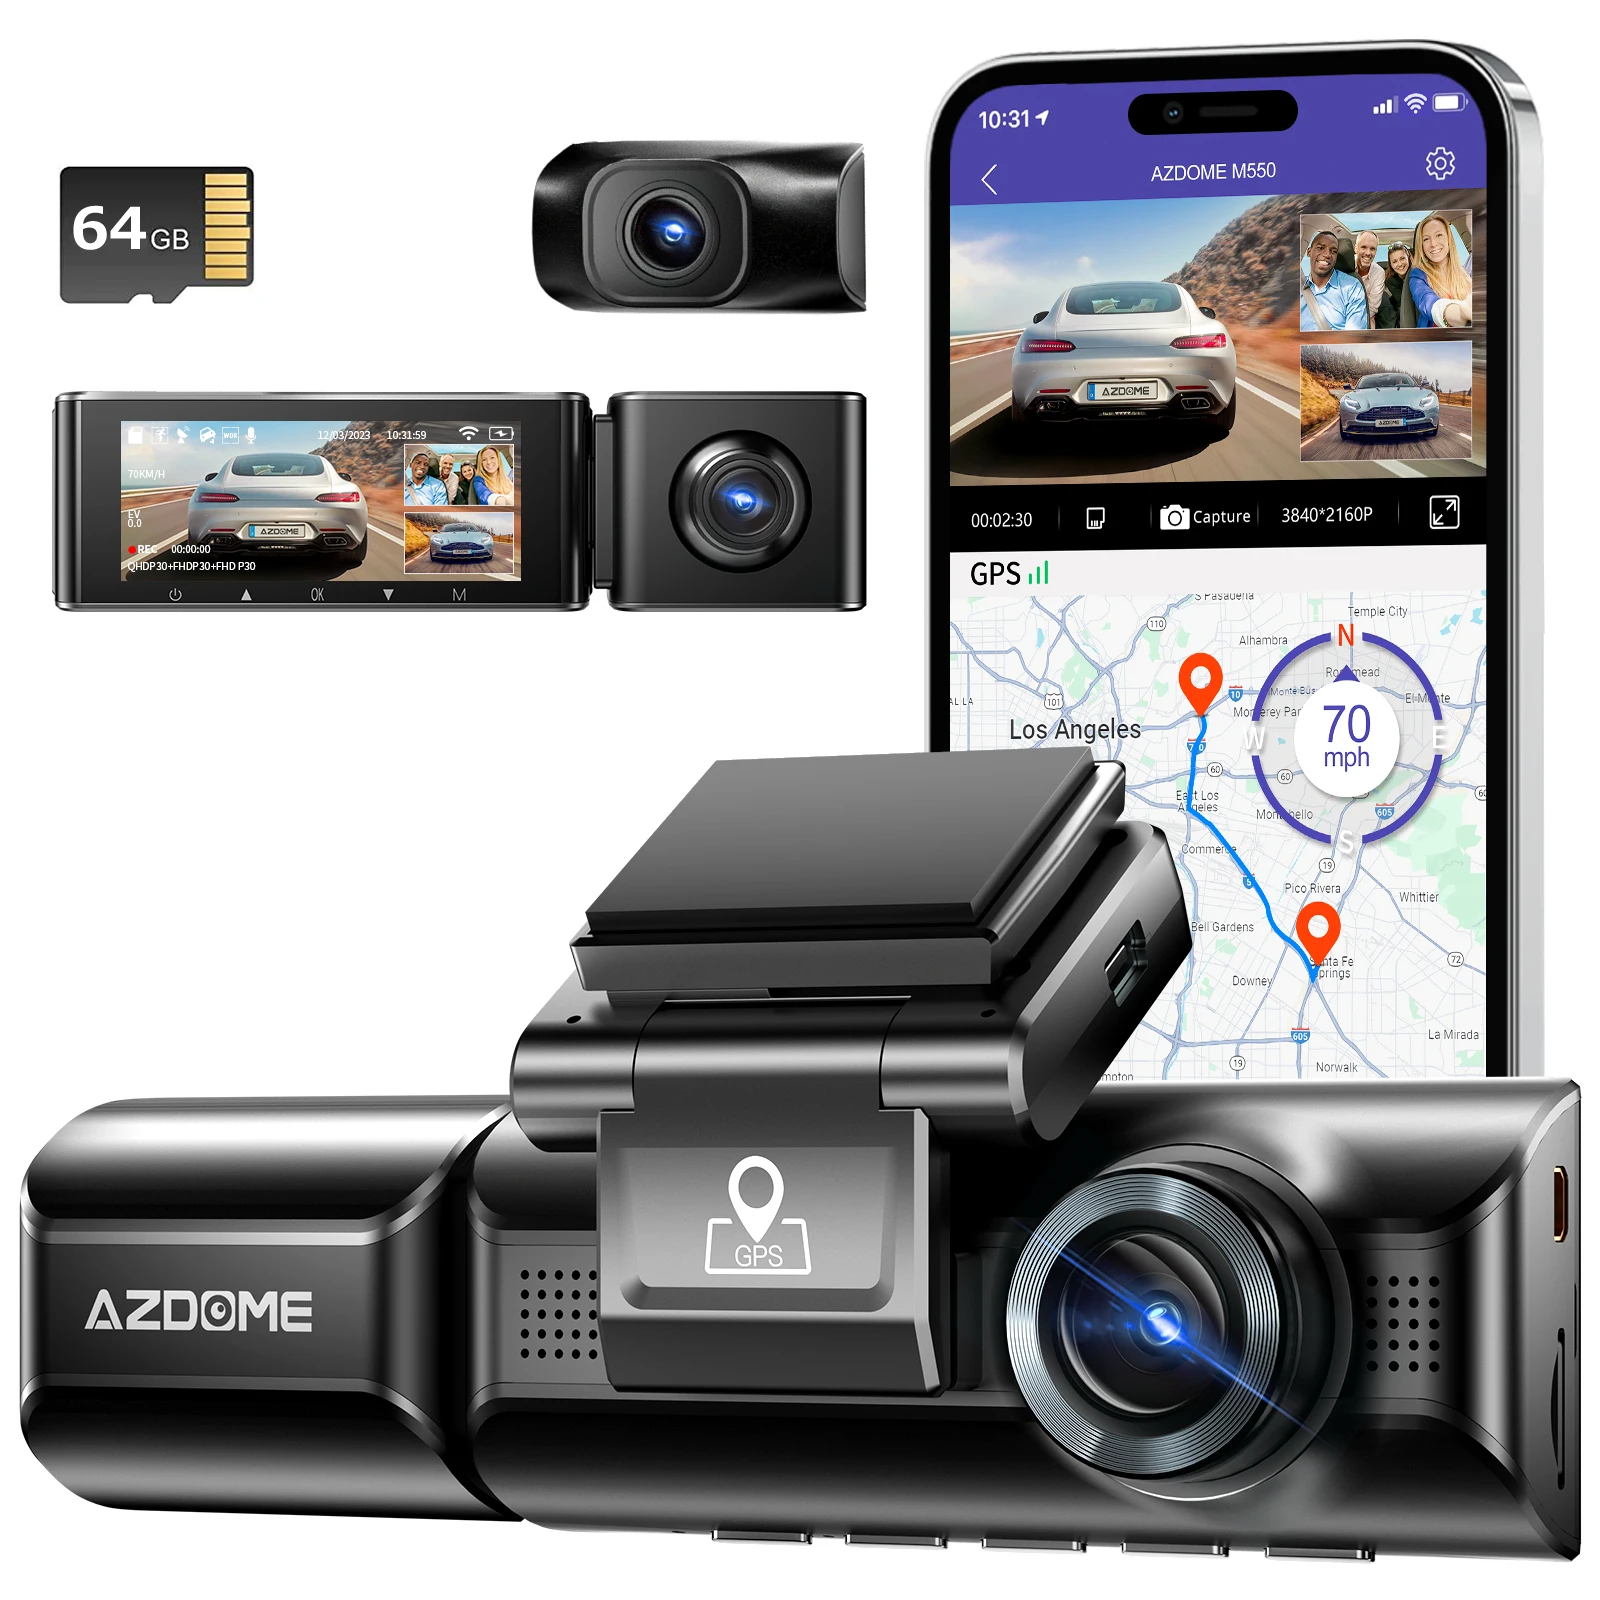 AZDOME M550 3 běžící pás palubní kamera přední dovnitř zadní tři způsob auto palubní kamera 4K+1080P dvojí běžící pás s GPS WIFI IR noc vidění